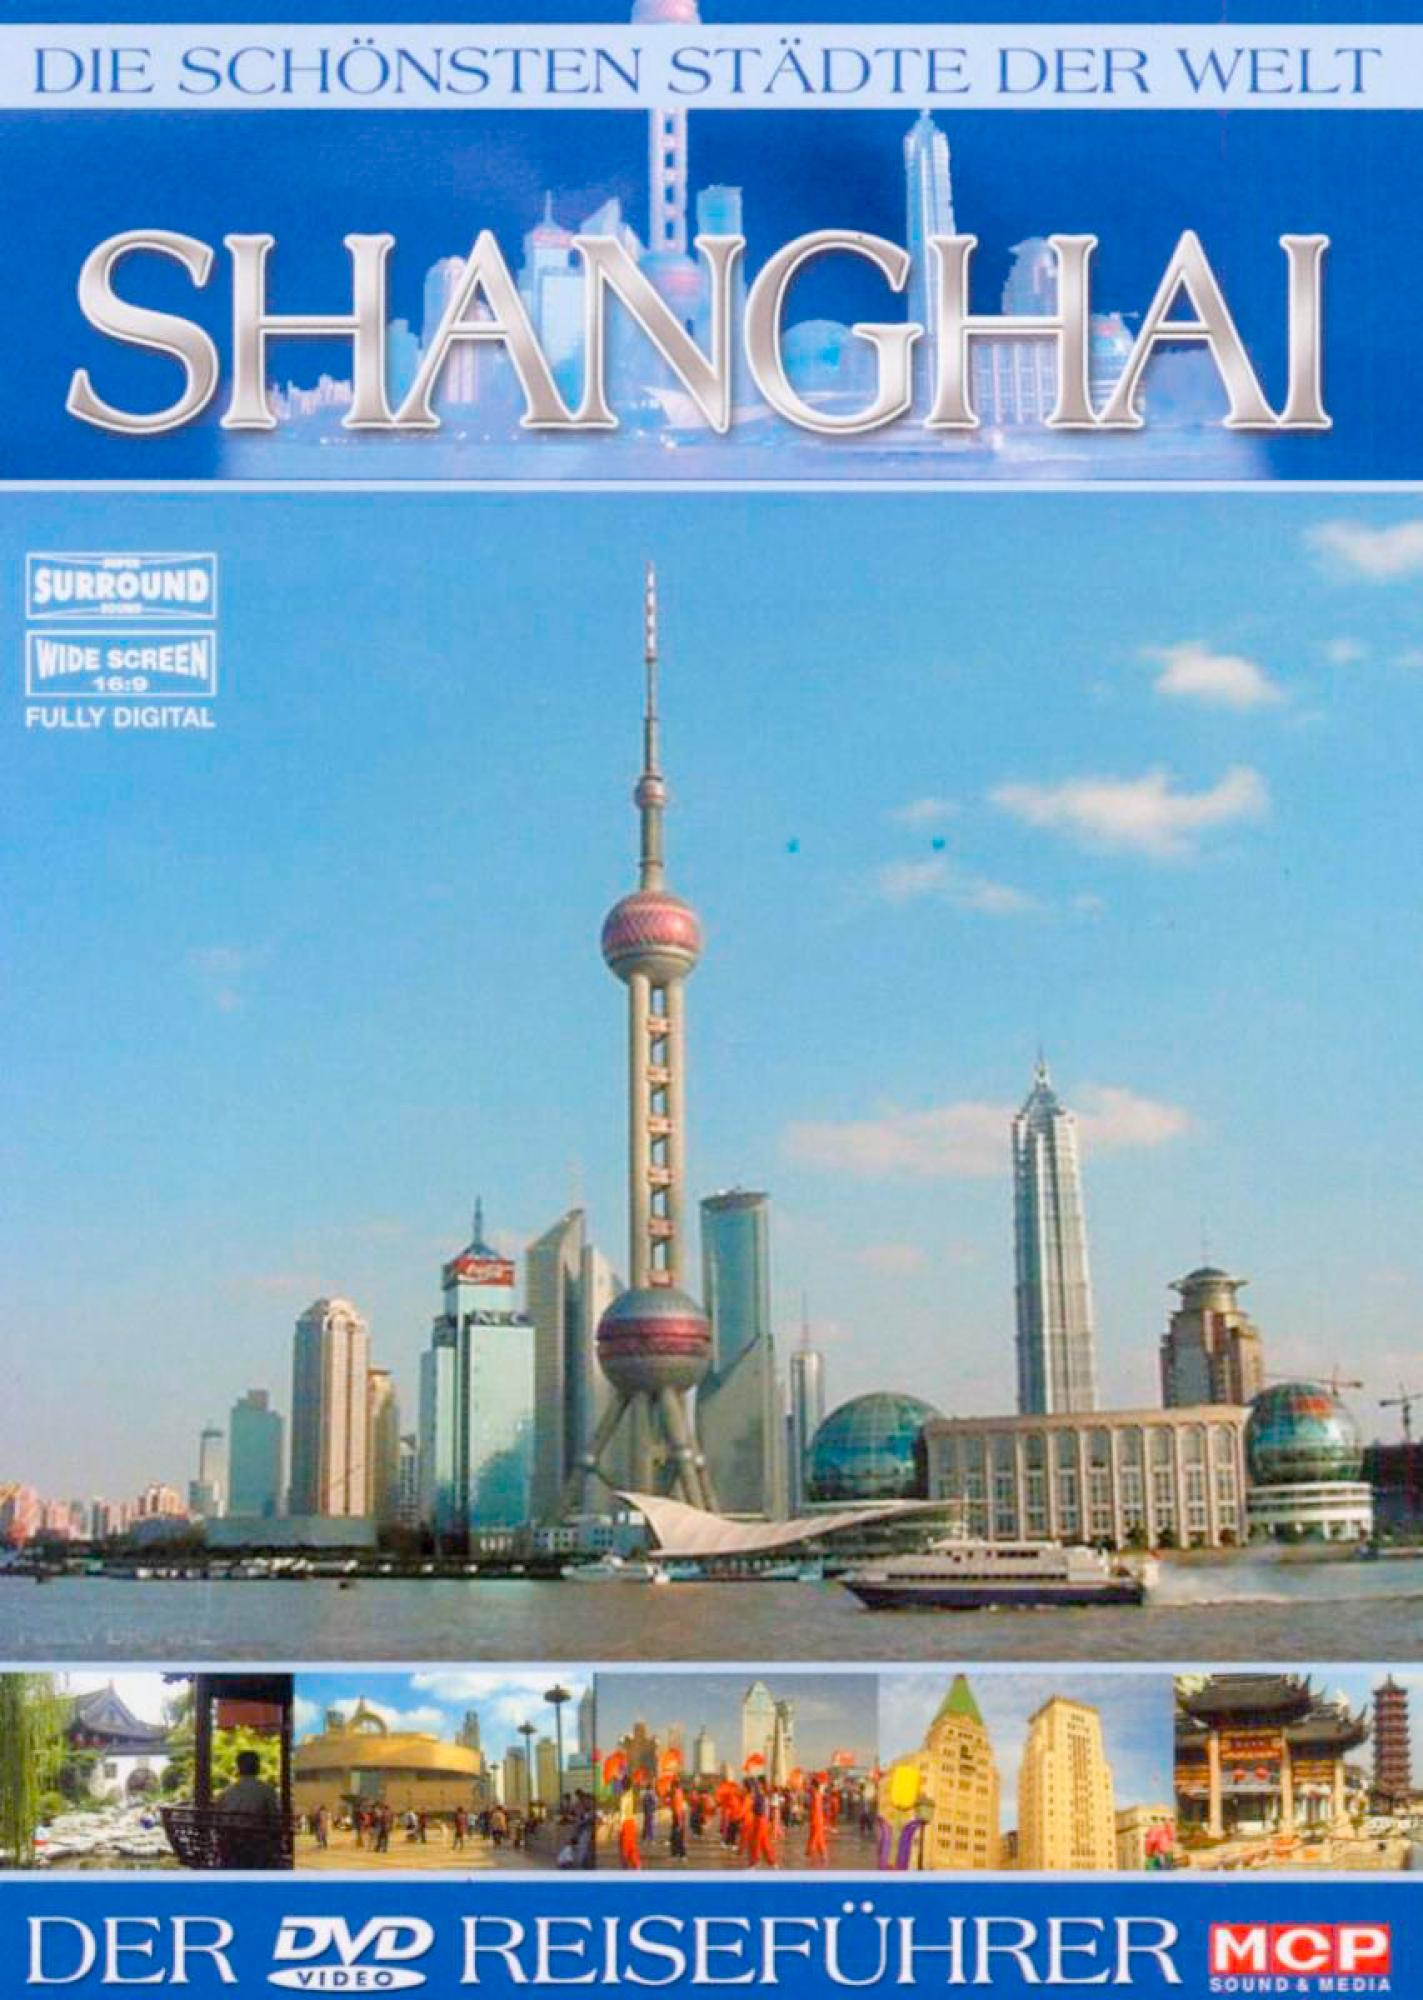 Die schönsten Städte der Welt - DVD Shanghai